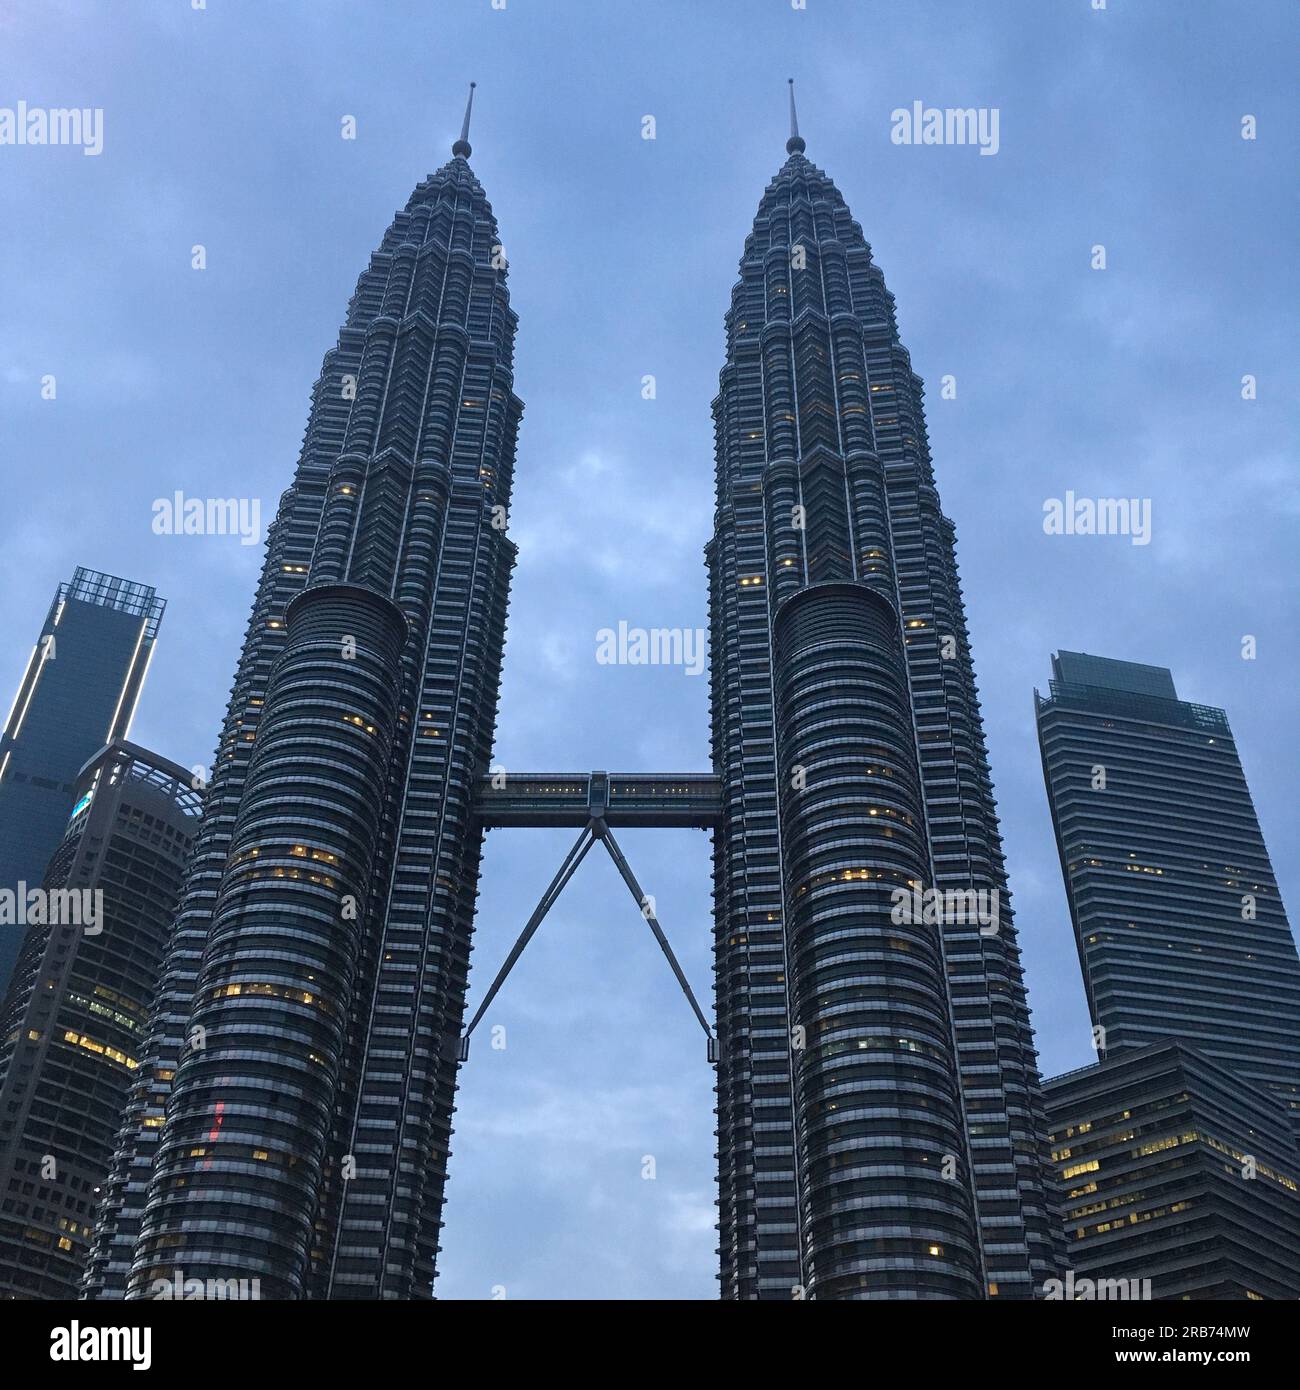 Petronas twin tower Kuala Lumpur, Malaysia / Torres gemelas Petronas Kuala Lumpur, Malasia / 马来西亚国家石油公司双子塔 吉隆坡 Stock Photo